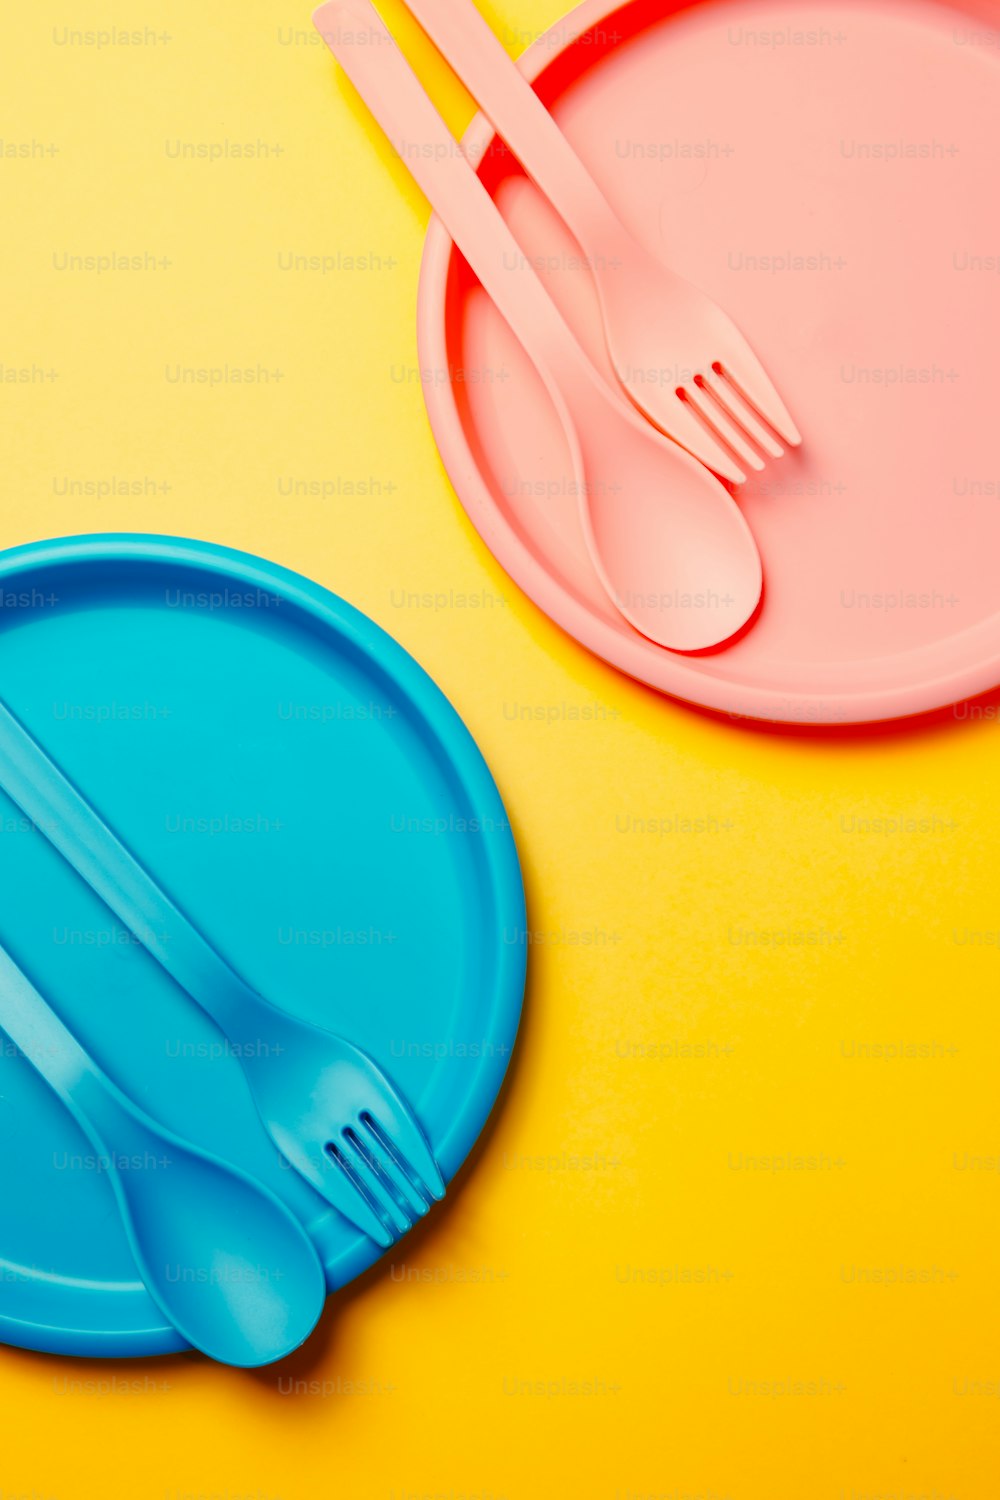 une fourchette en plastique et une assiette en plastique sur fond jaune et rose